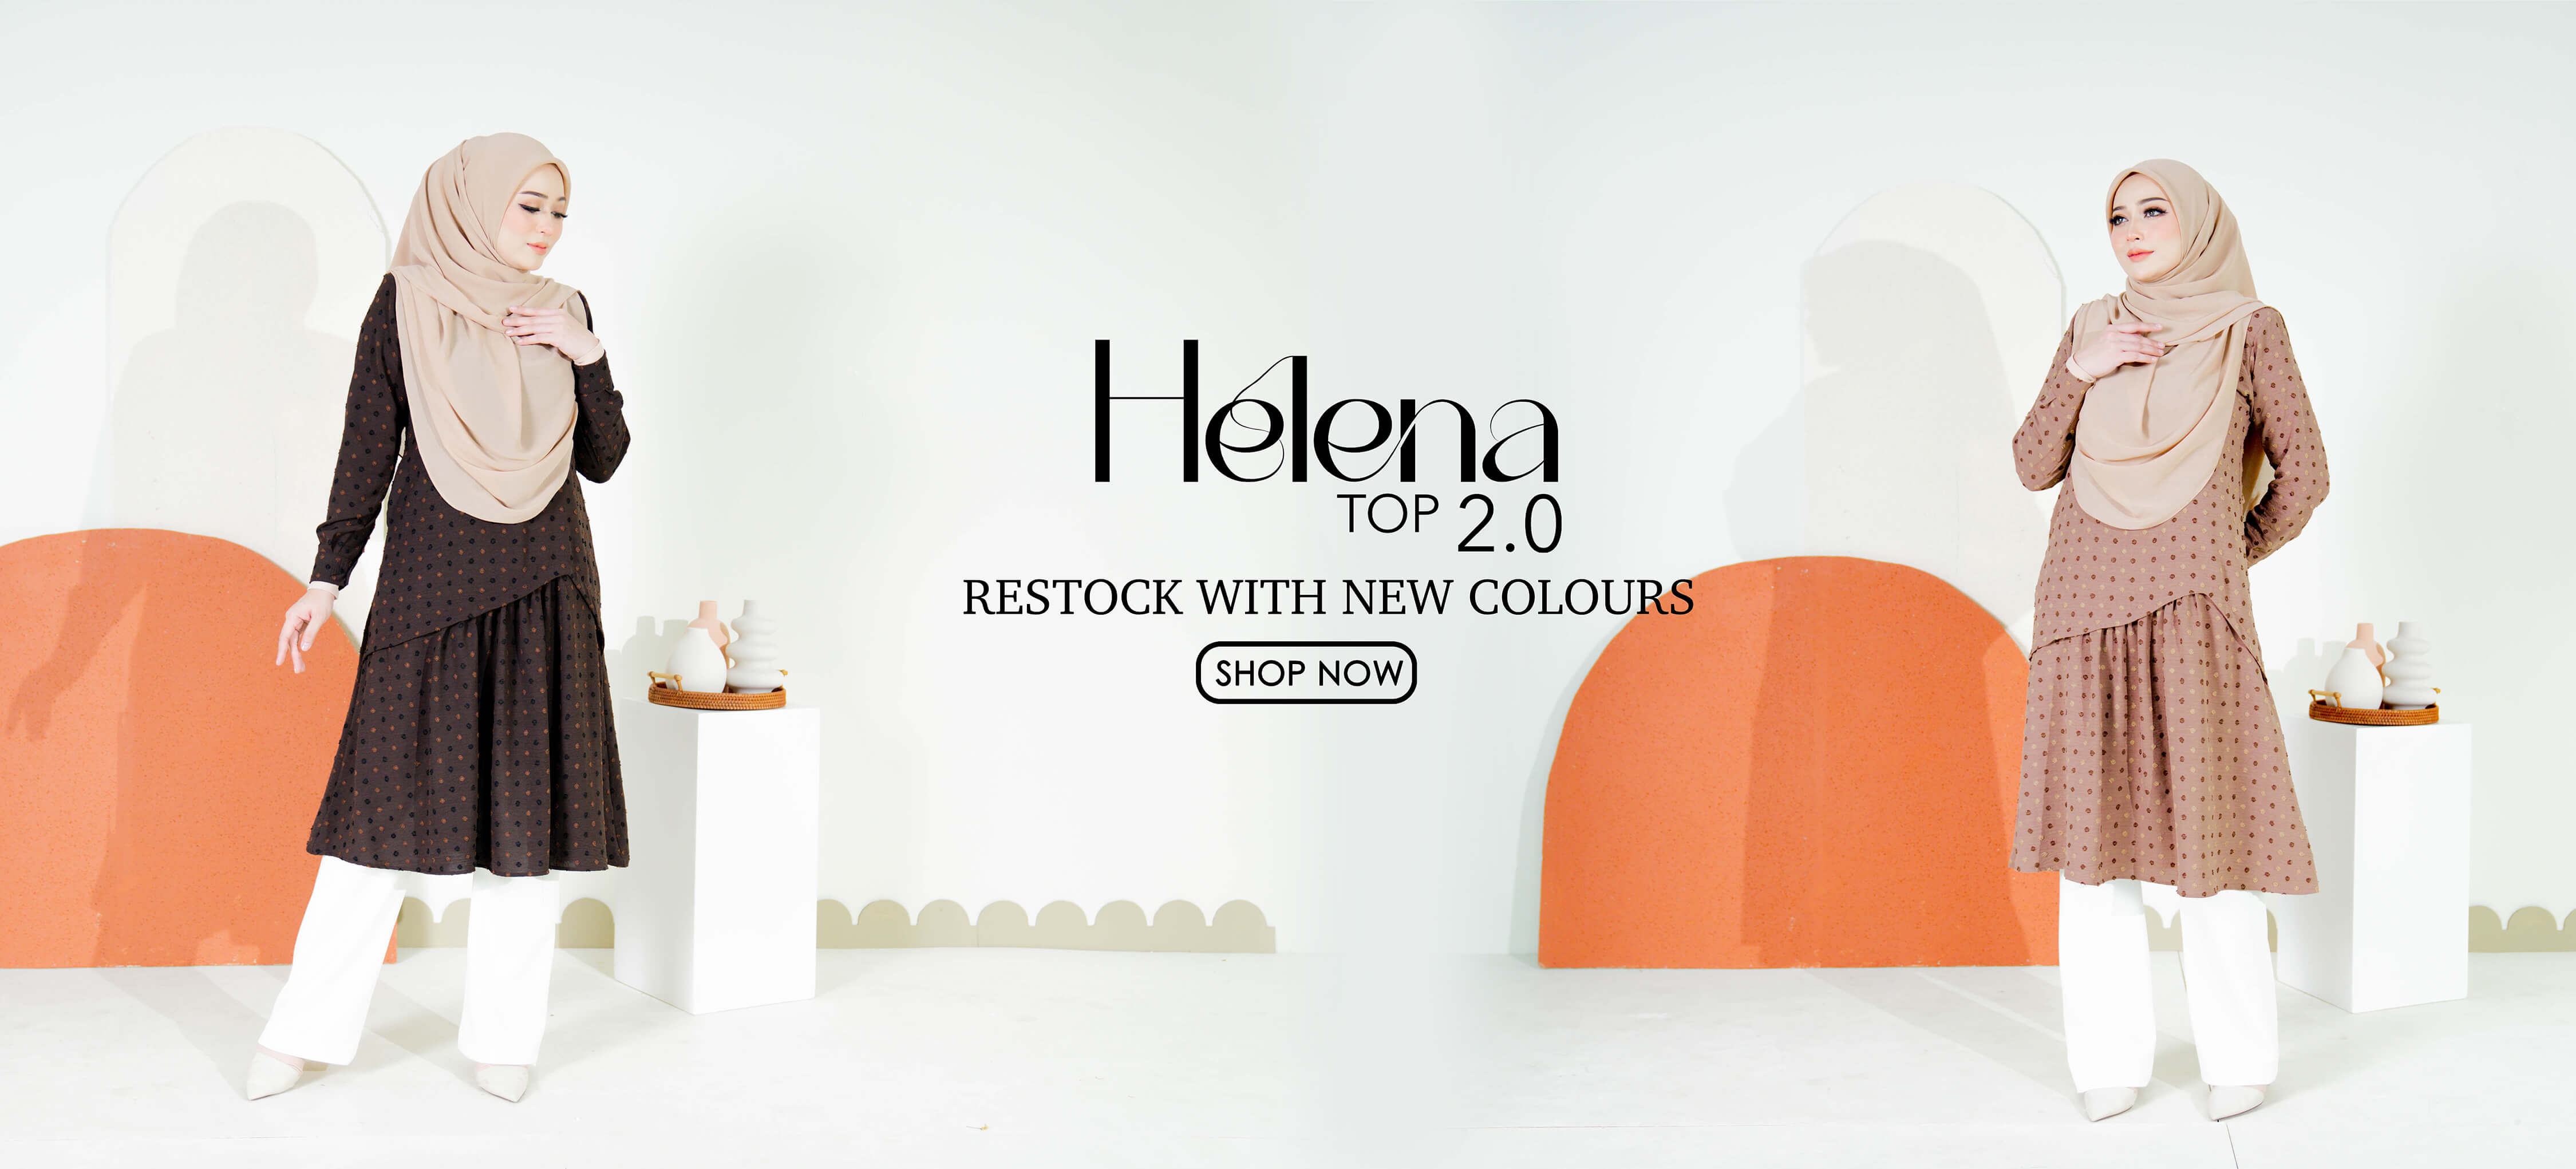 Helena Top 2.0